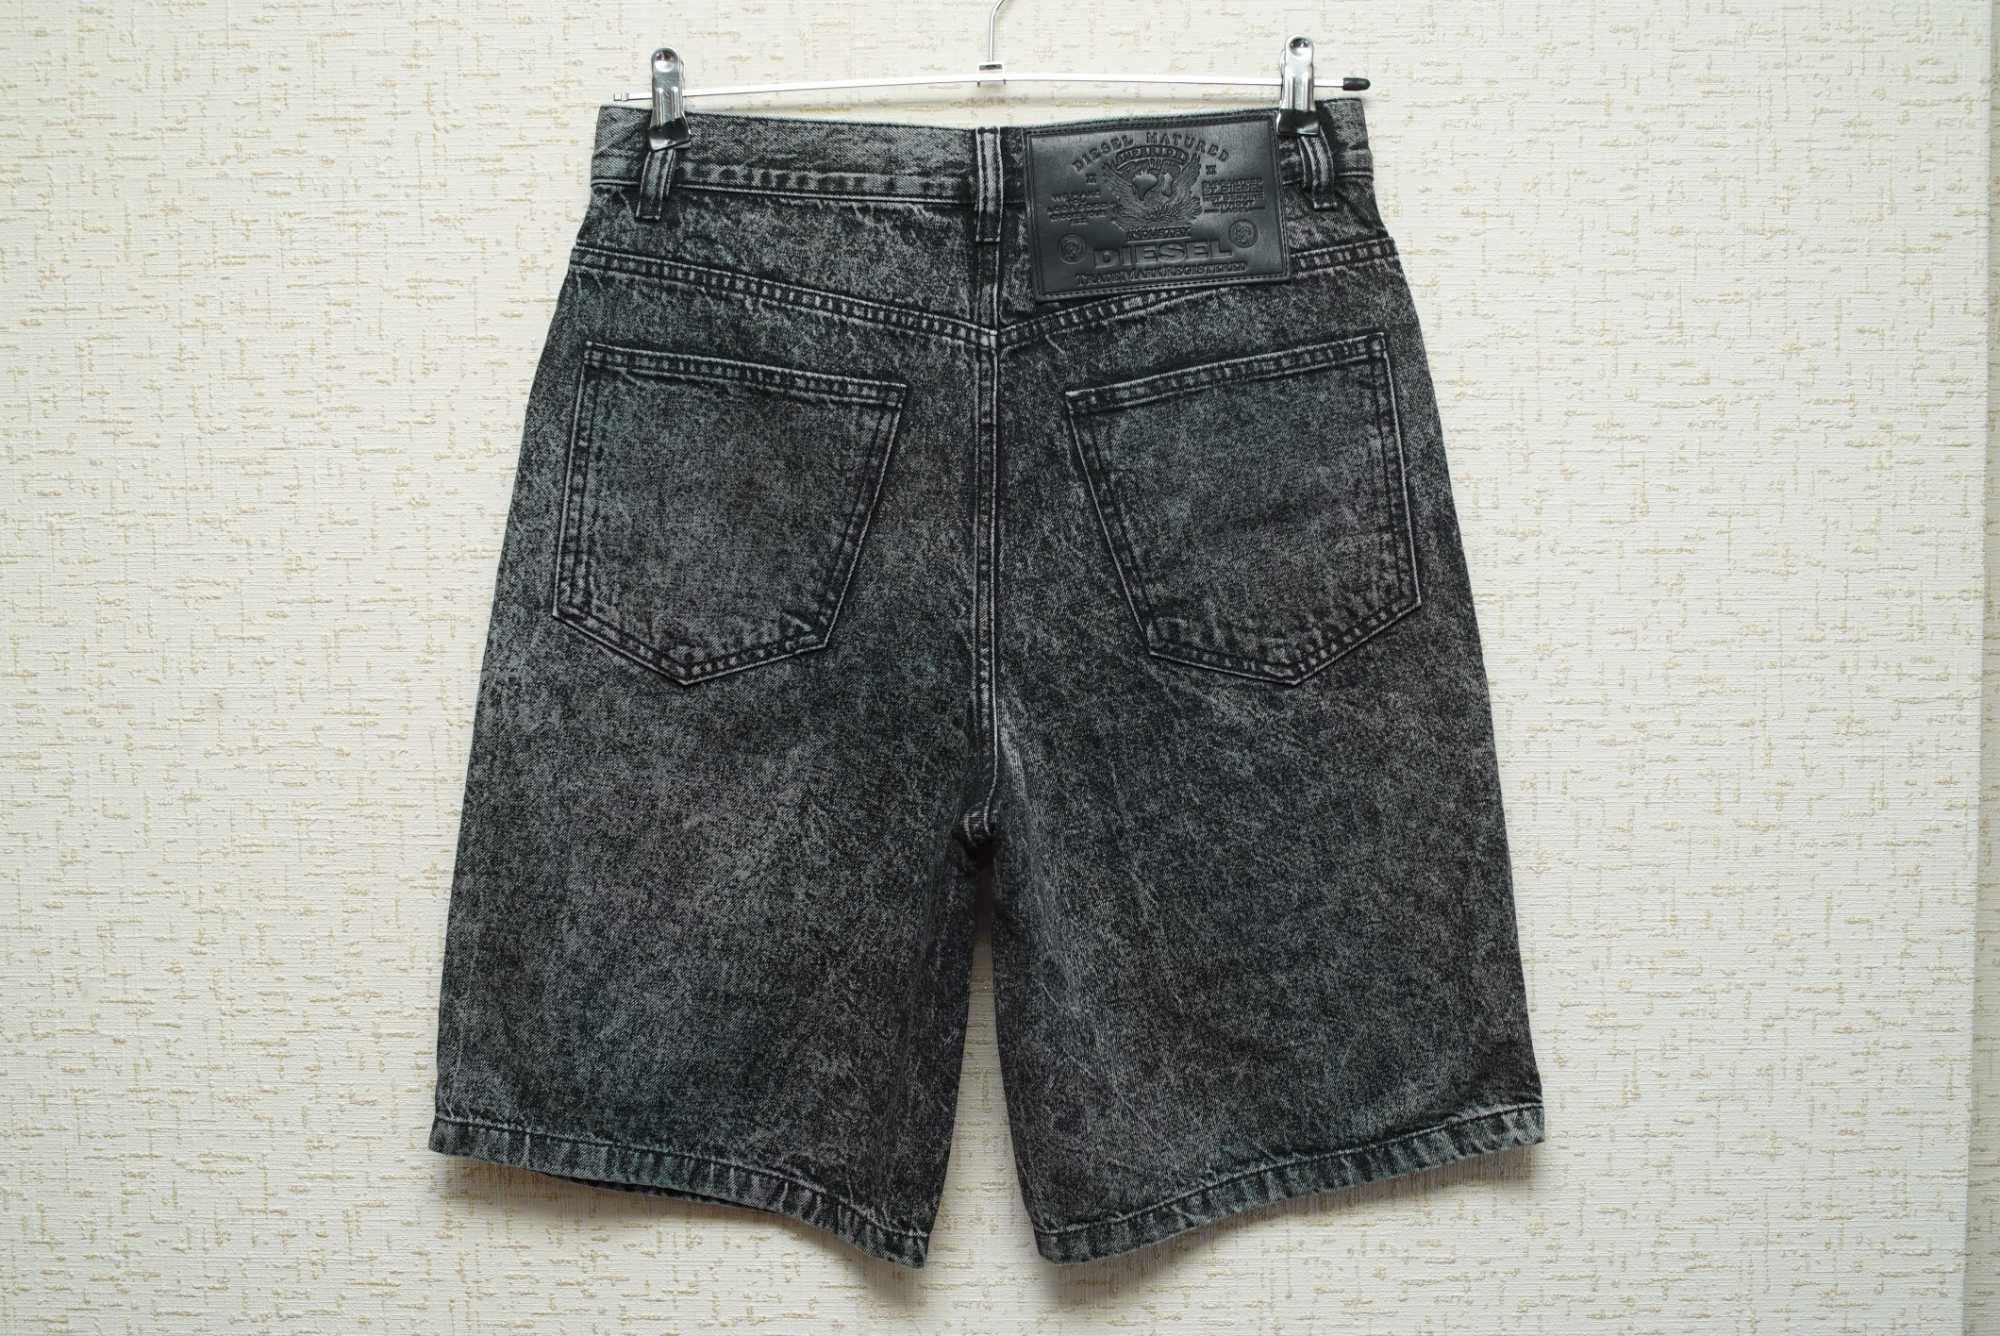 Мужские джинсовые шорты DIESEL темно-серого цвета.